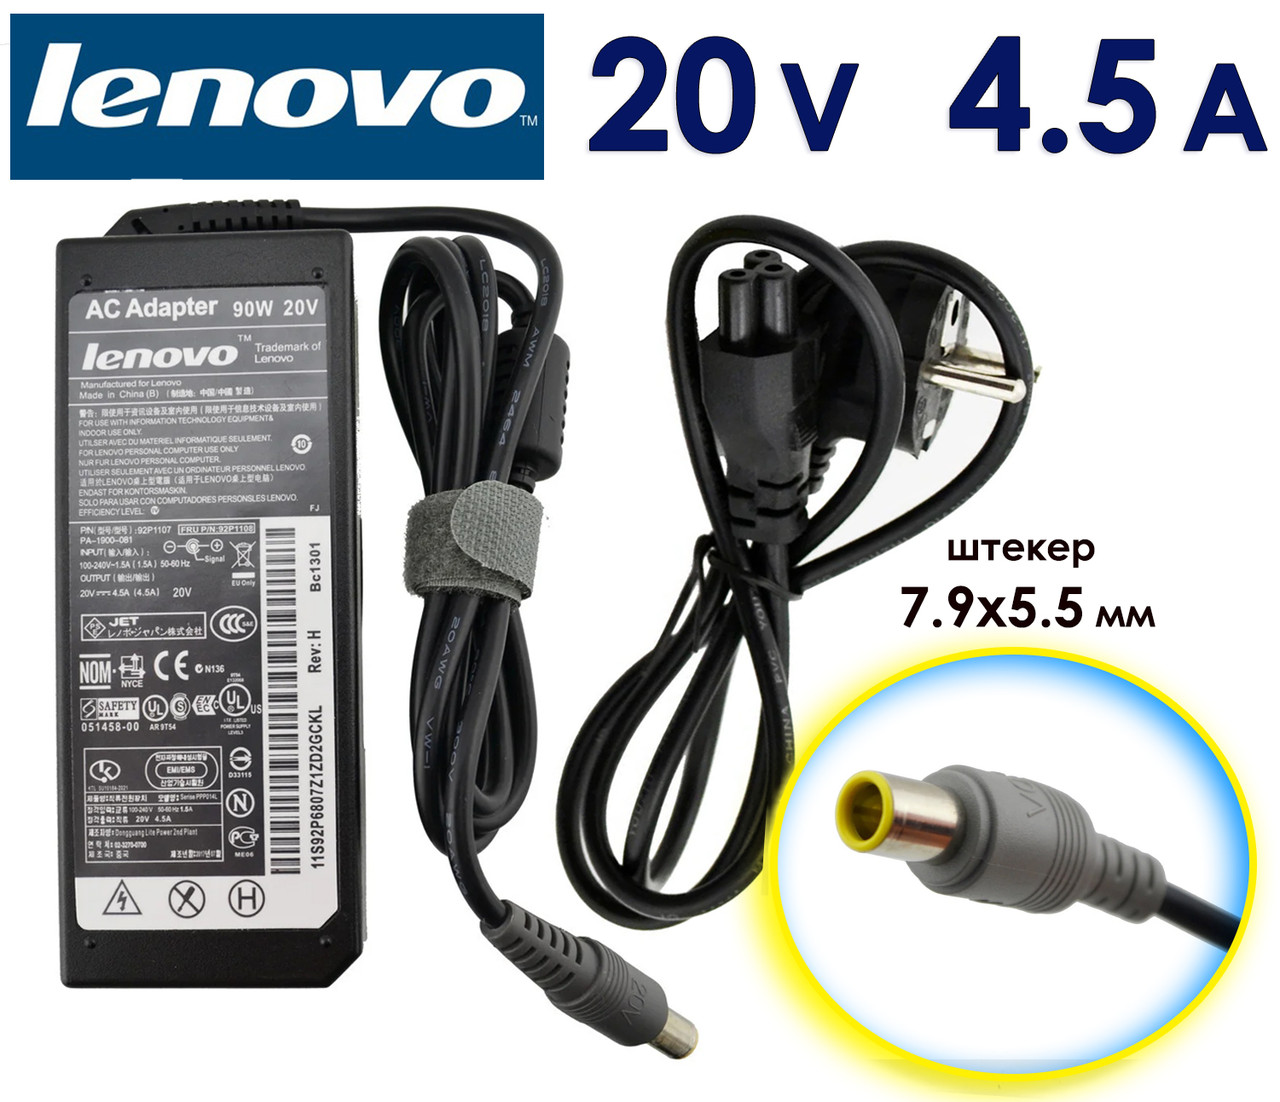 Зарядний пристрій, адаптер Lenovo 20V 4.5A 90W 7.9x5.5 (8.0 pin) Зарядка для ноутбука Леново, зарядне